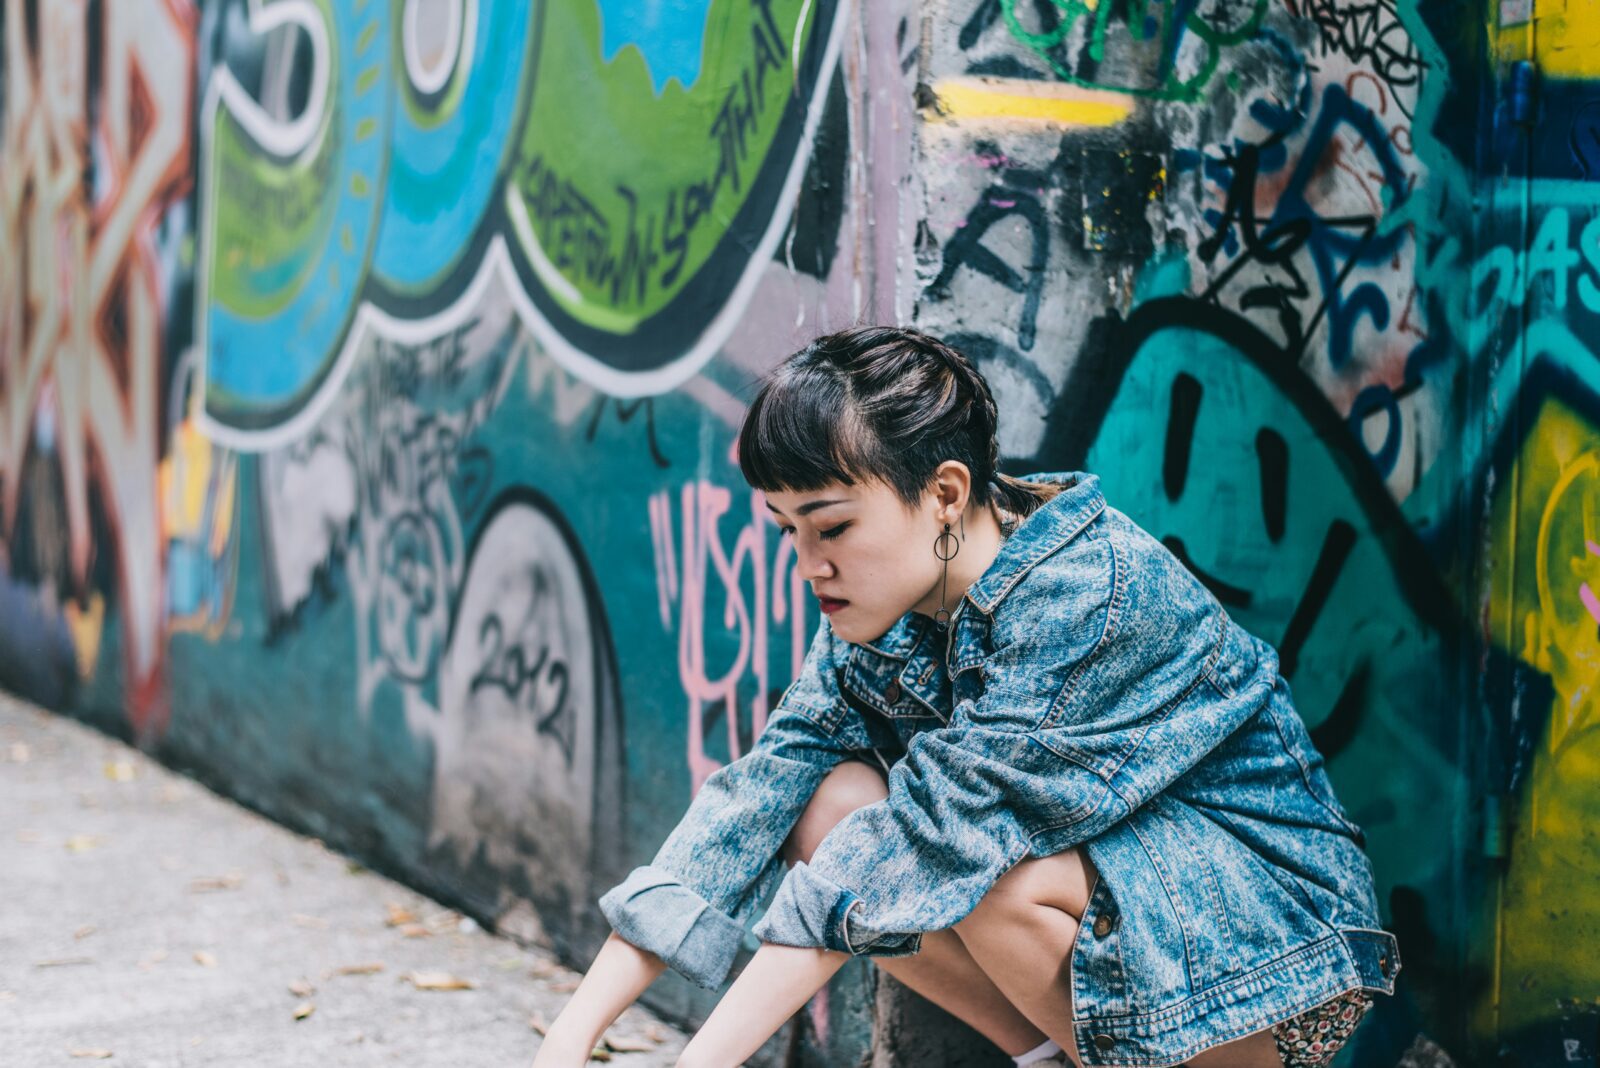 woman in denim jacket by graffiti wall, deadstock guide